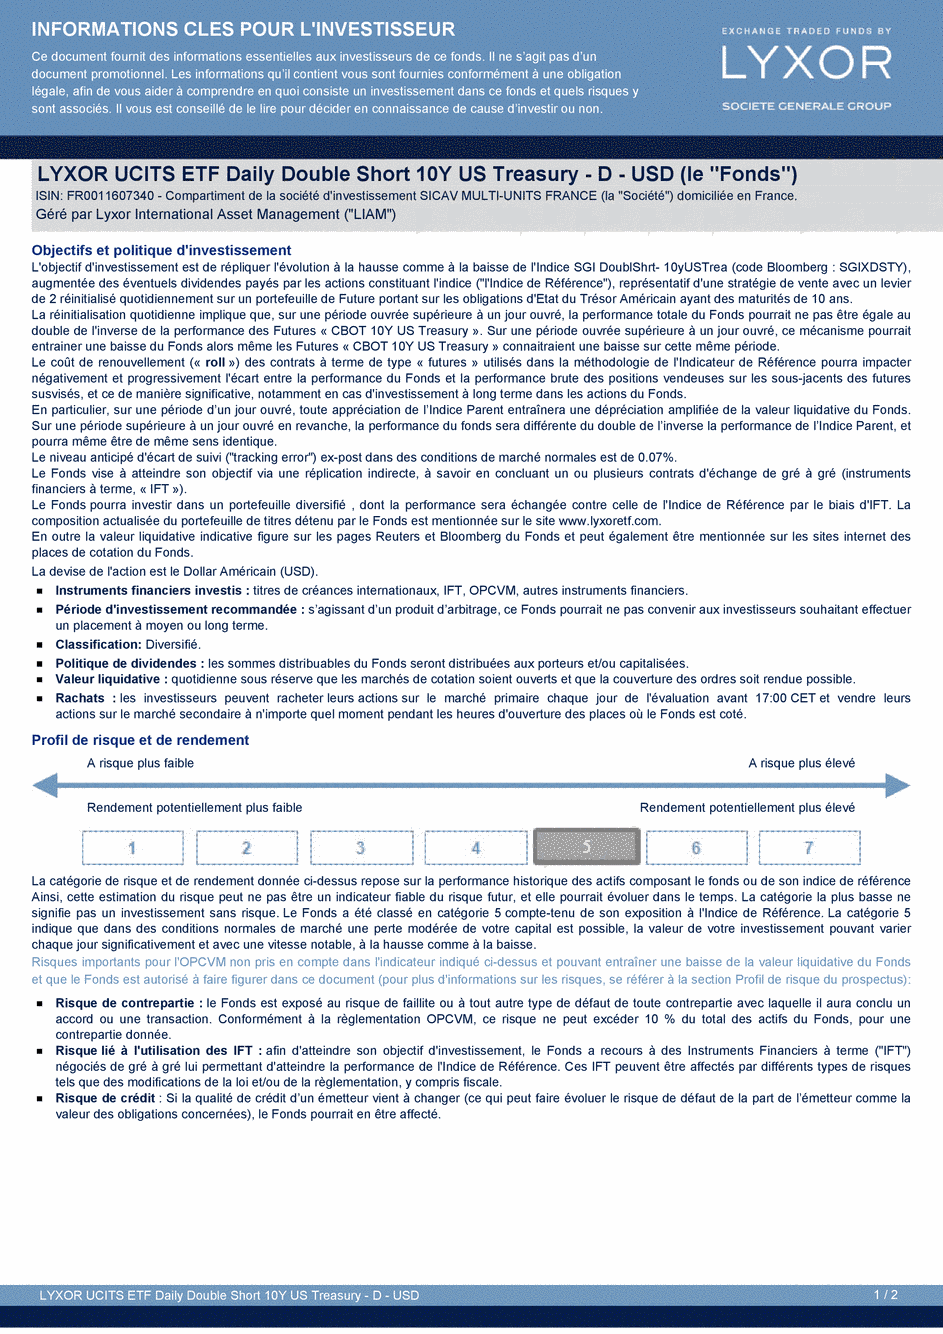 DICI LYXOR UCITS ETF DAILY DOUBLE SHORT 10Y US TREASURY Part D USD - 26/03/2015 - Français